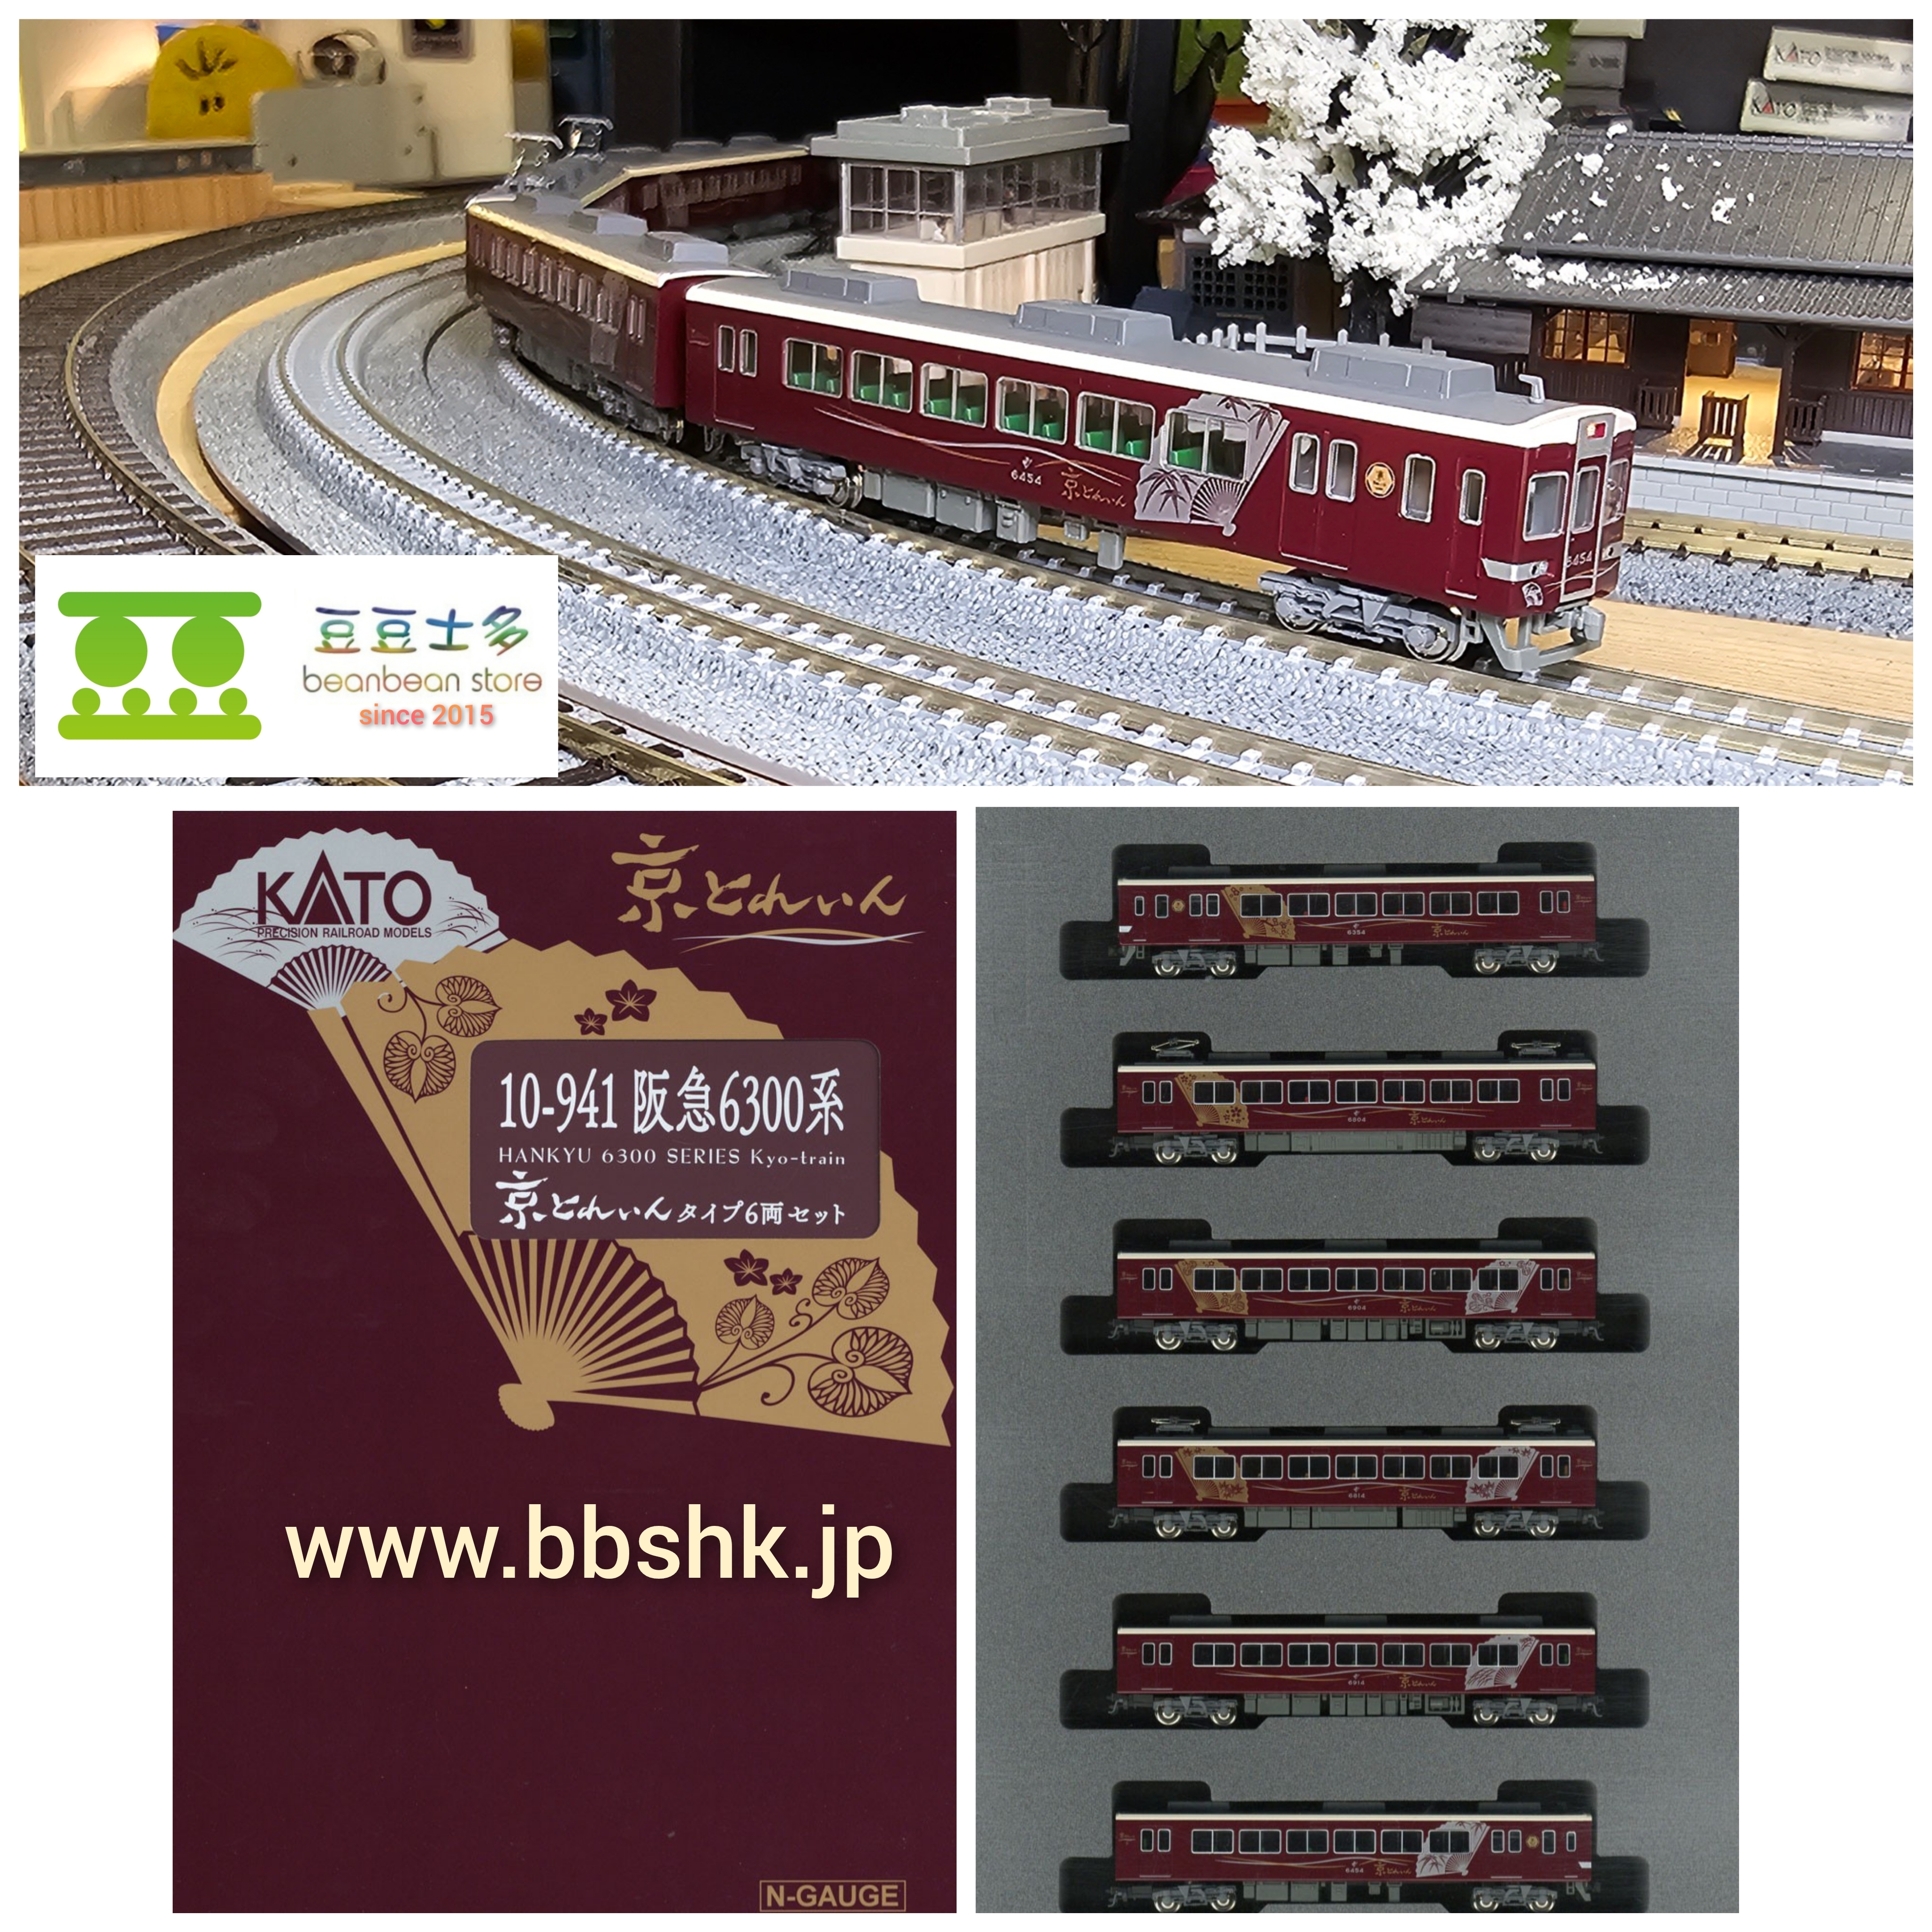 KATO 10-941 阪急 6300系 「京とれいん」 6両